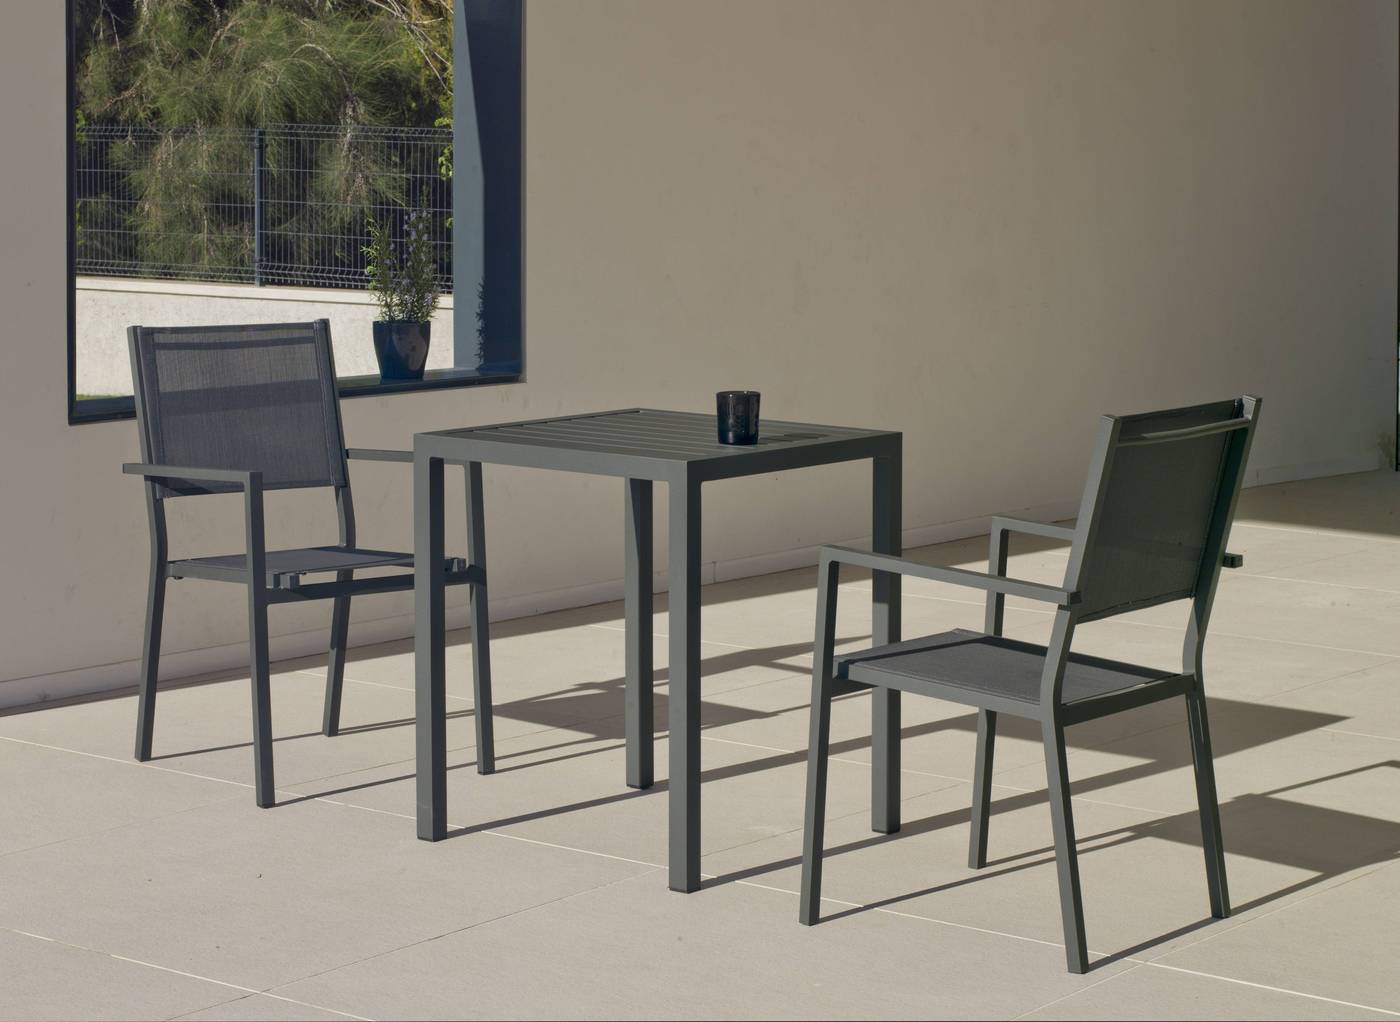 Conjunto aluminio para jardín: Mesa cuadrada de 65 cm. + 2 sillones de aluminio y textilen. Disponible en color blanco, antracita, champagne, plata o marrón.